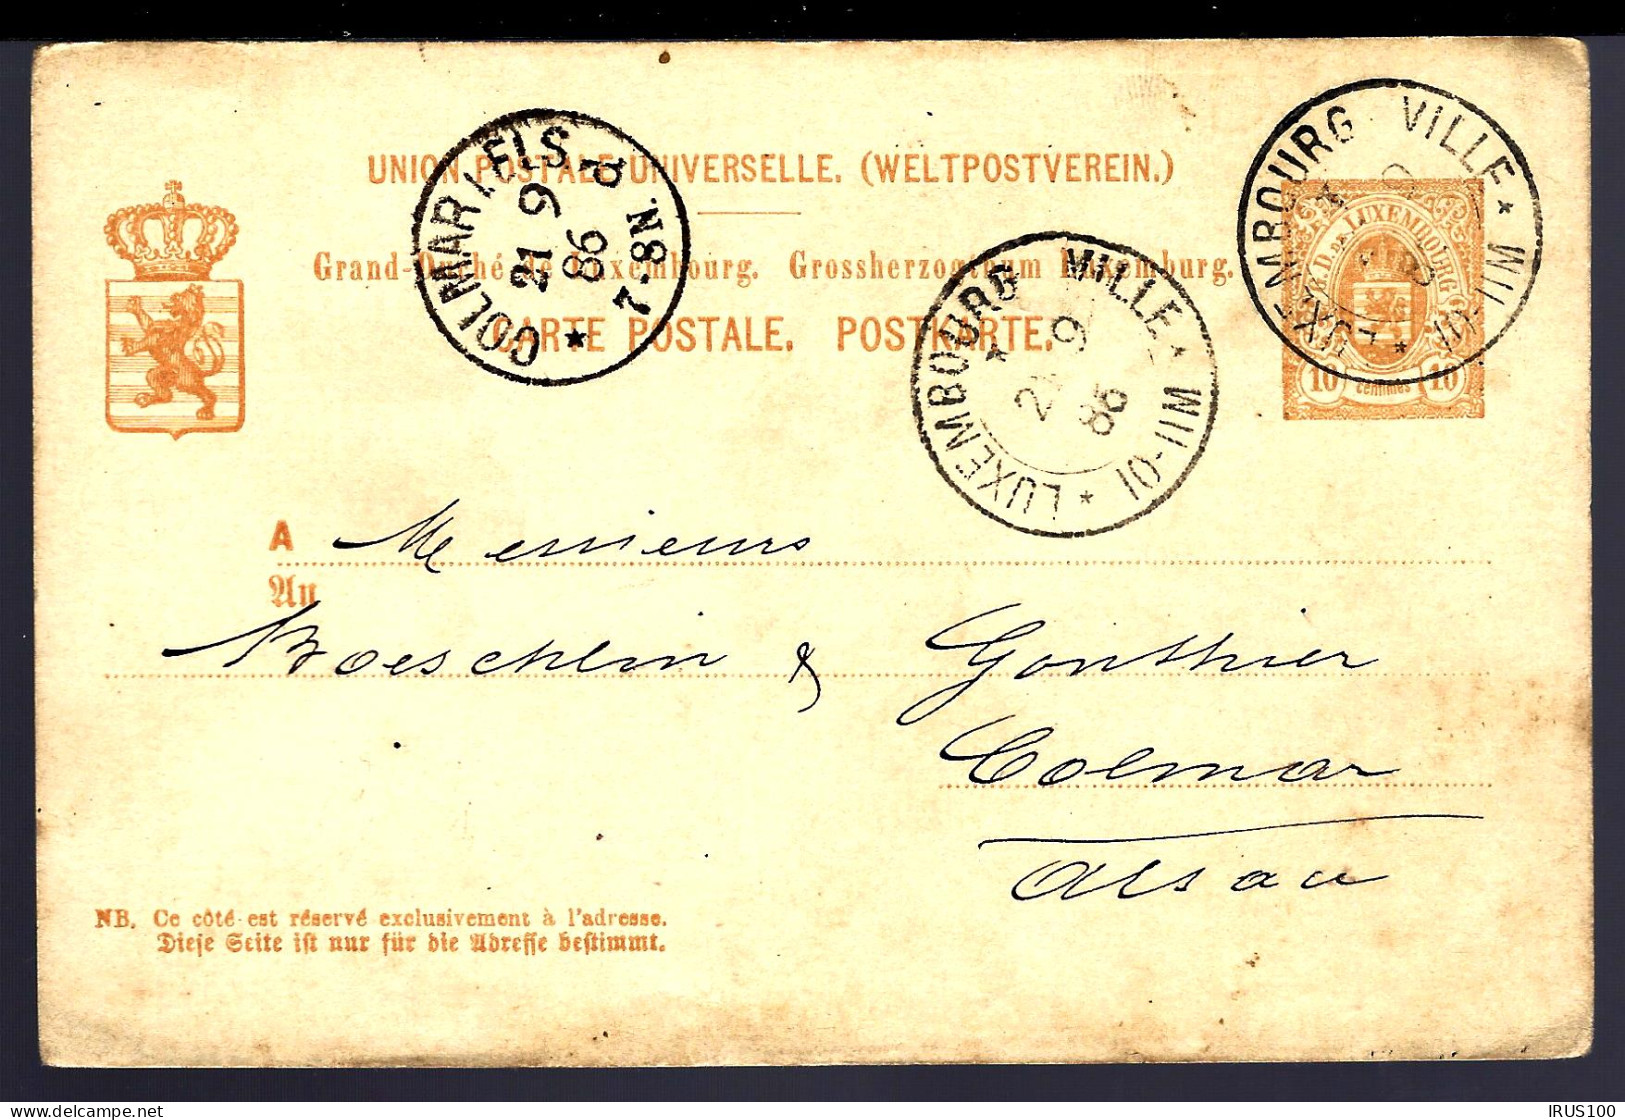 ENTIER POSTAL DE LUXEMBOURG VILLE - 1886 - POUR COLMAR - Entiers Postaux